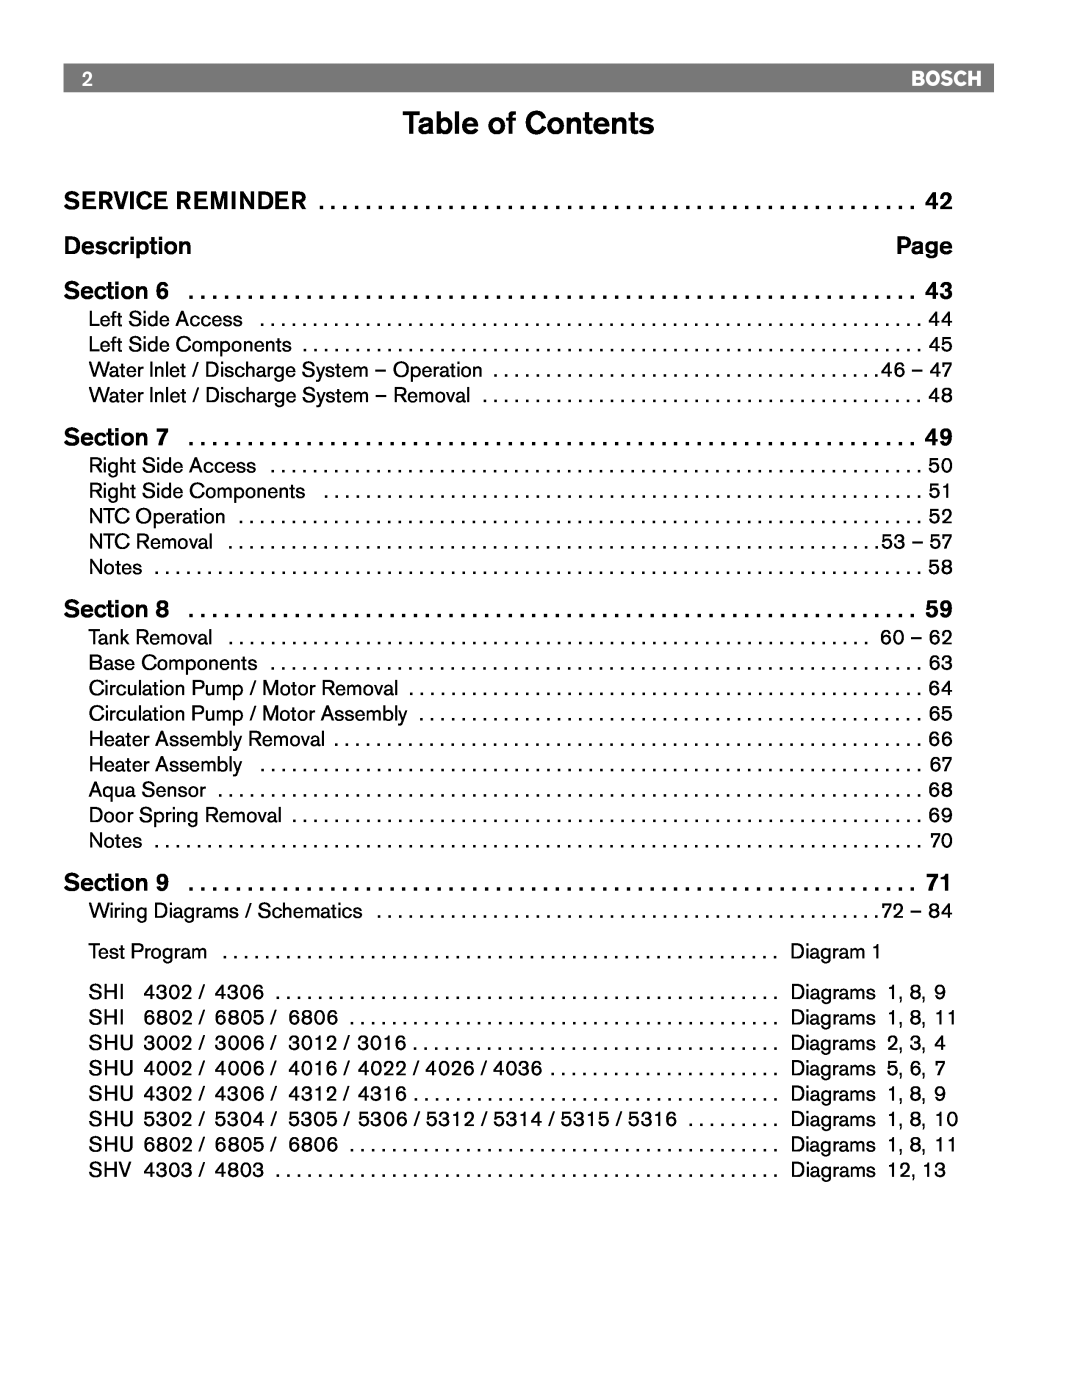 Bosch Appliances 4302, TRUE, 6806, 6805, 4306, 6802 manual Table of Contents, Description, Page 